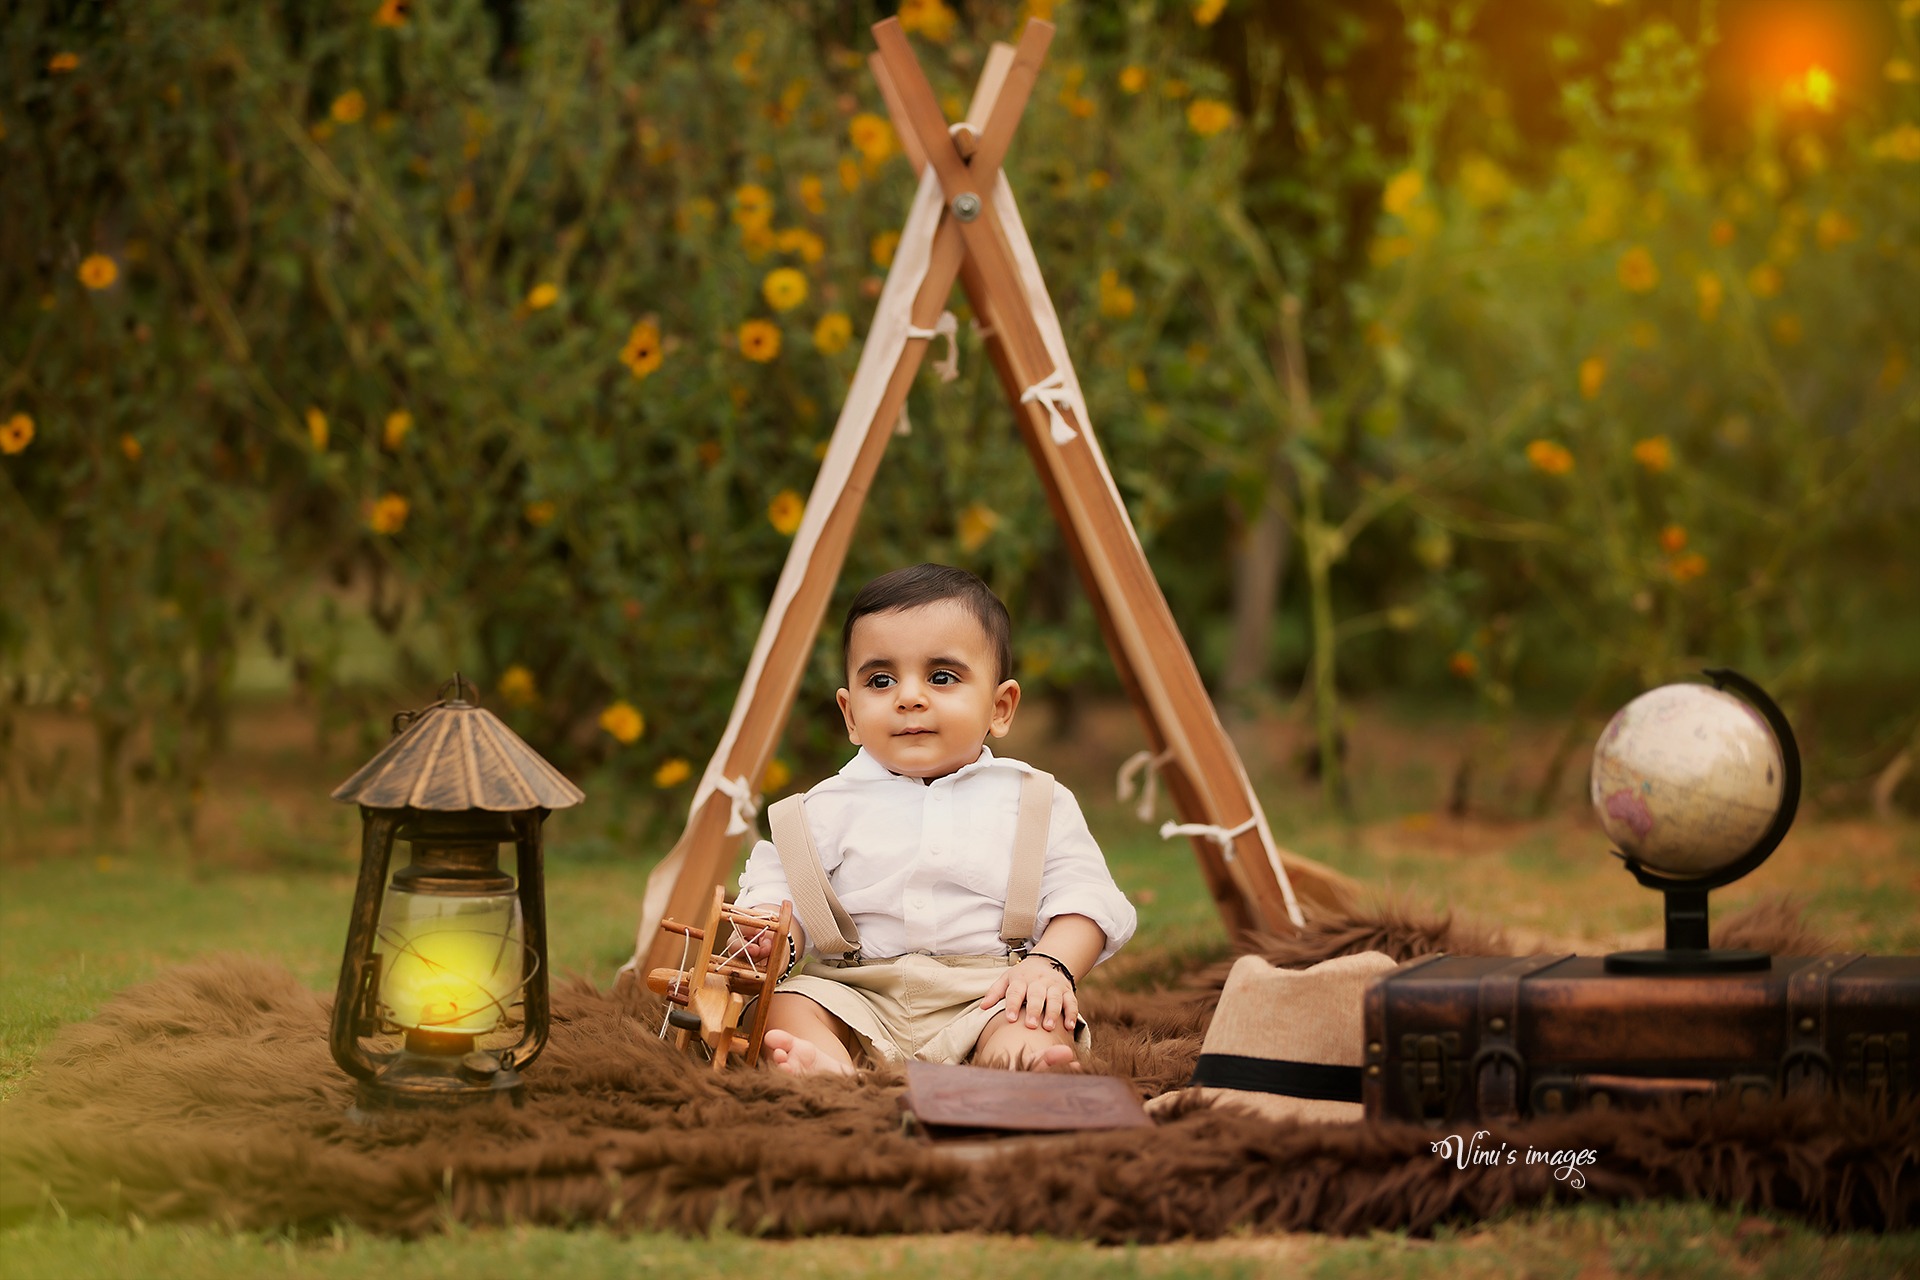 baby photoshoot ideas outdoor